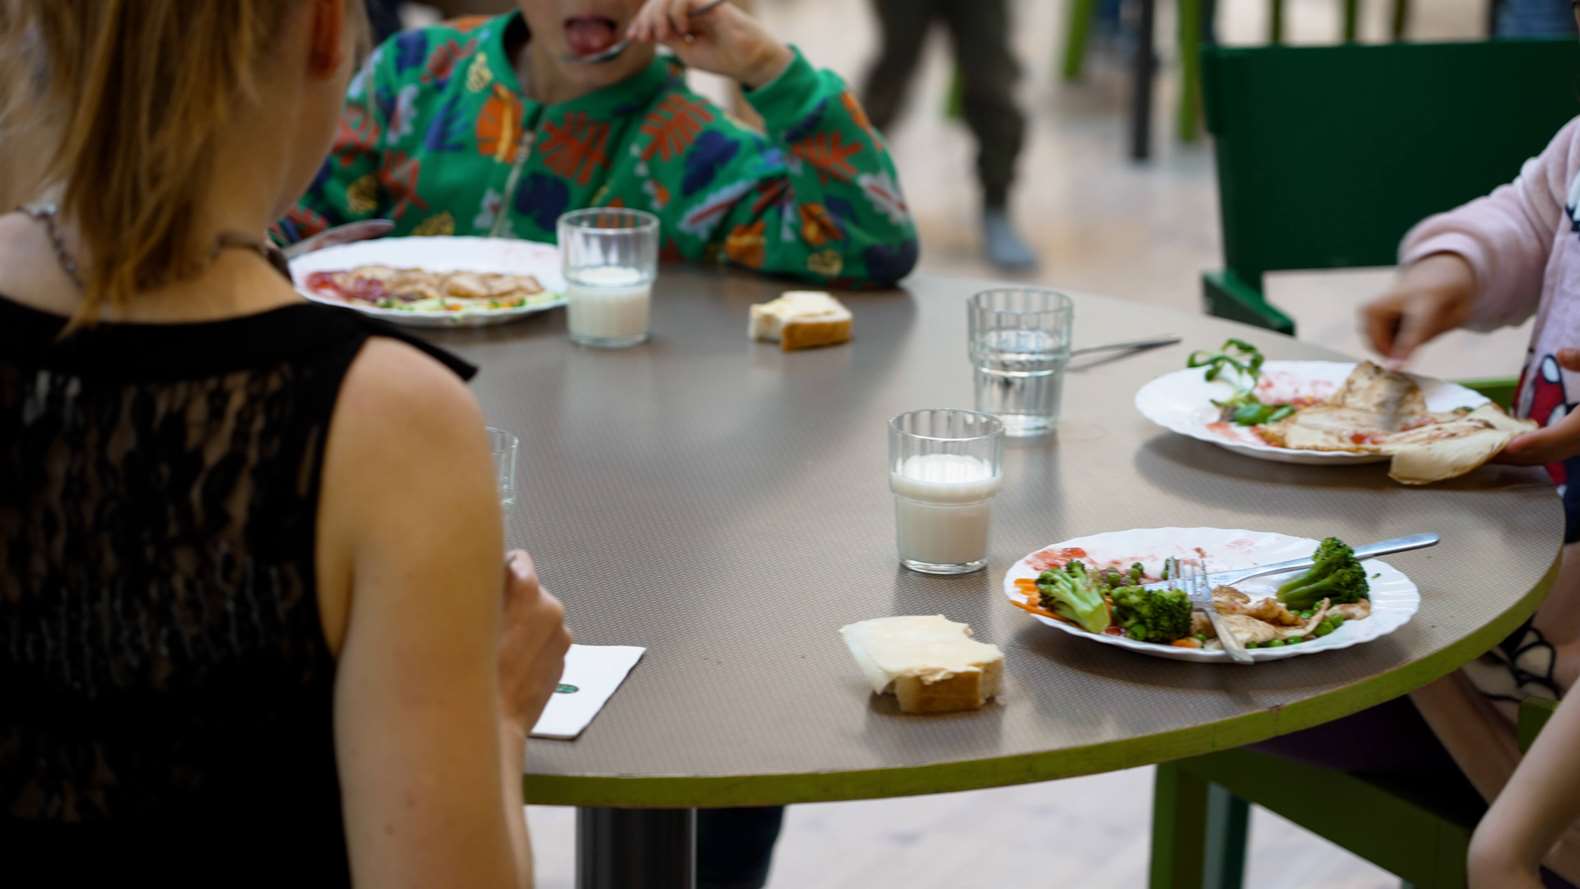 Barn sitter vid ett bord och äter skolmat